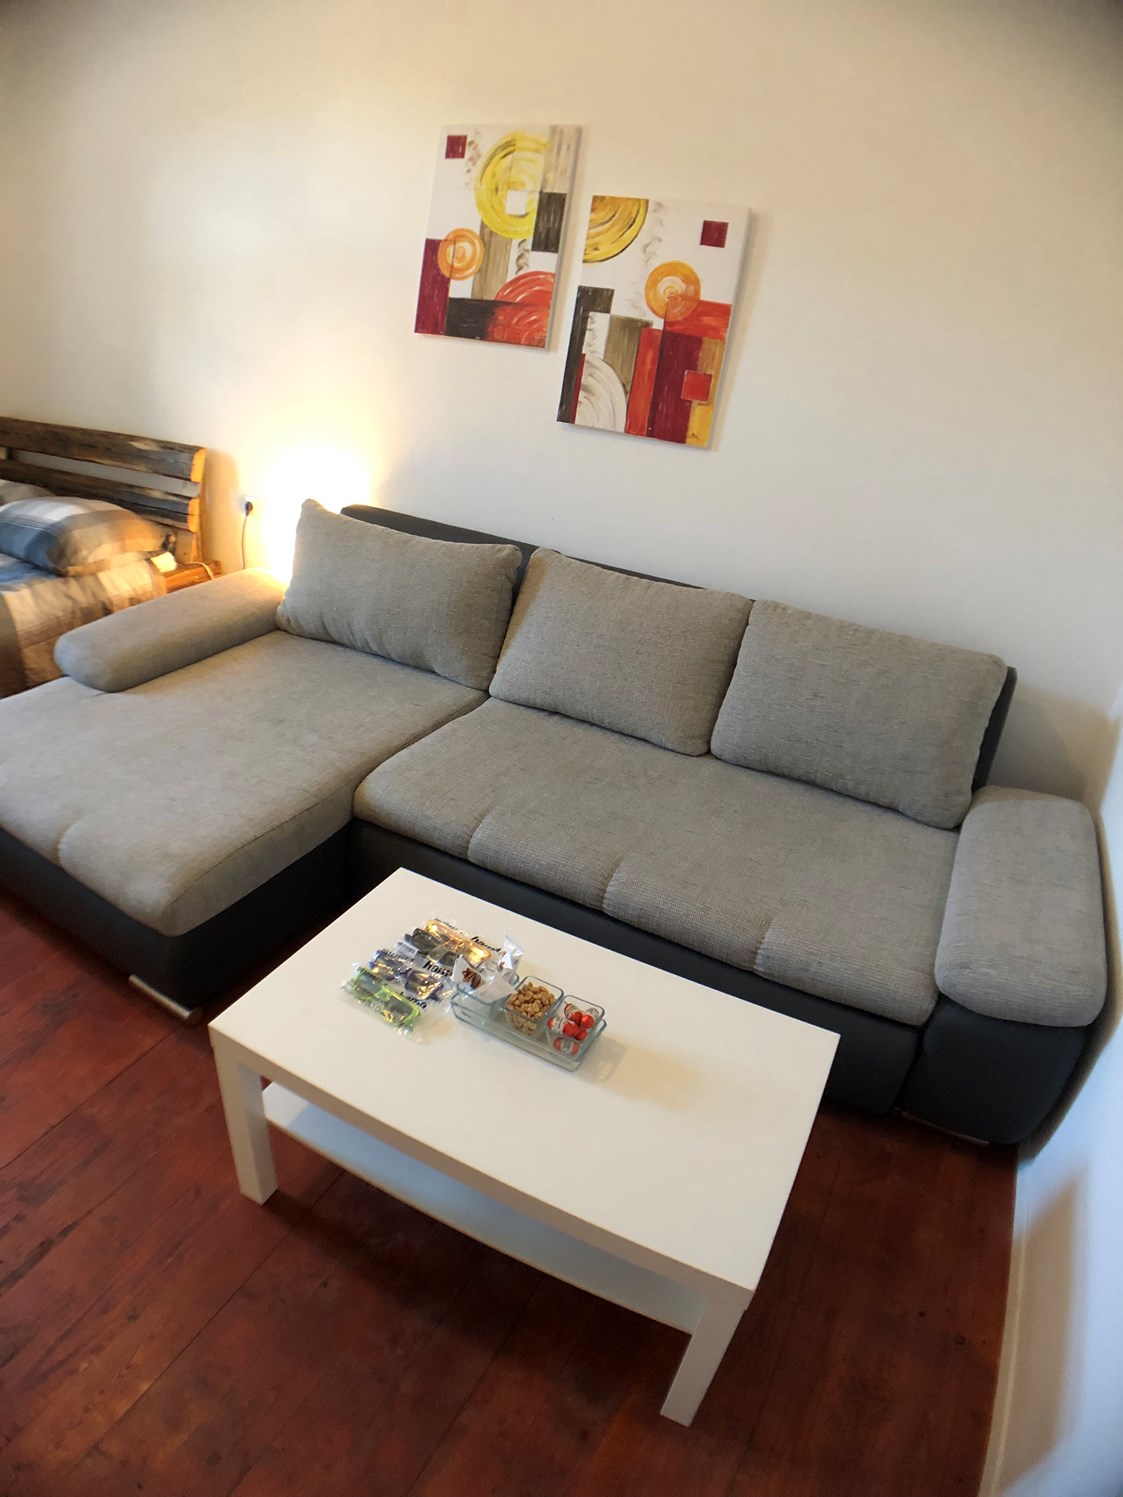 Monteurzimmer: Couch der Monteurunterkunft in Graz. - Monteurzimmer/Monteurwohnung in Graz